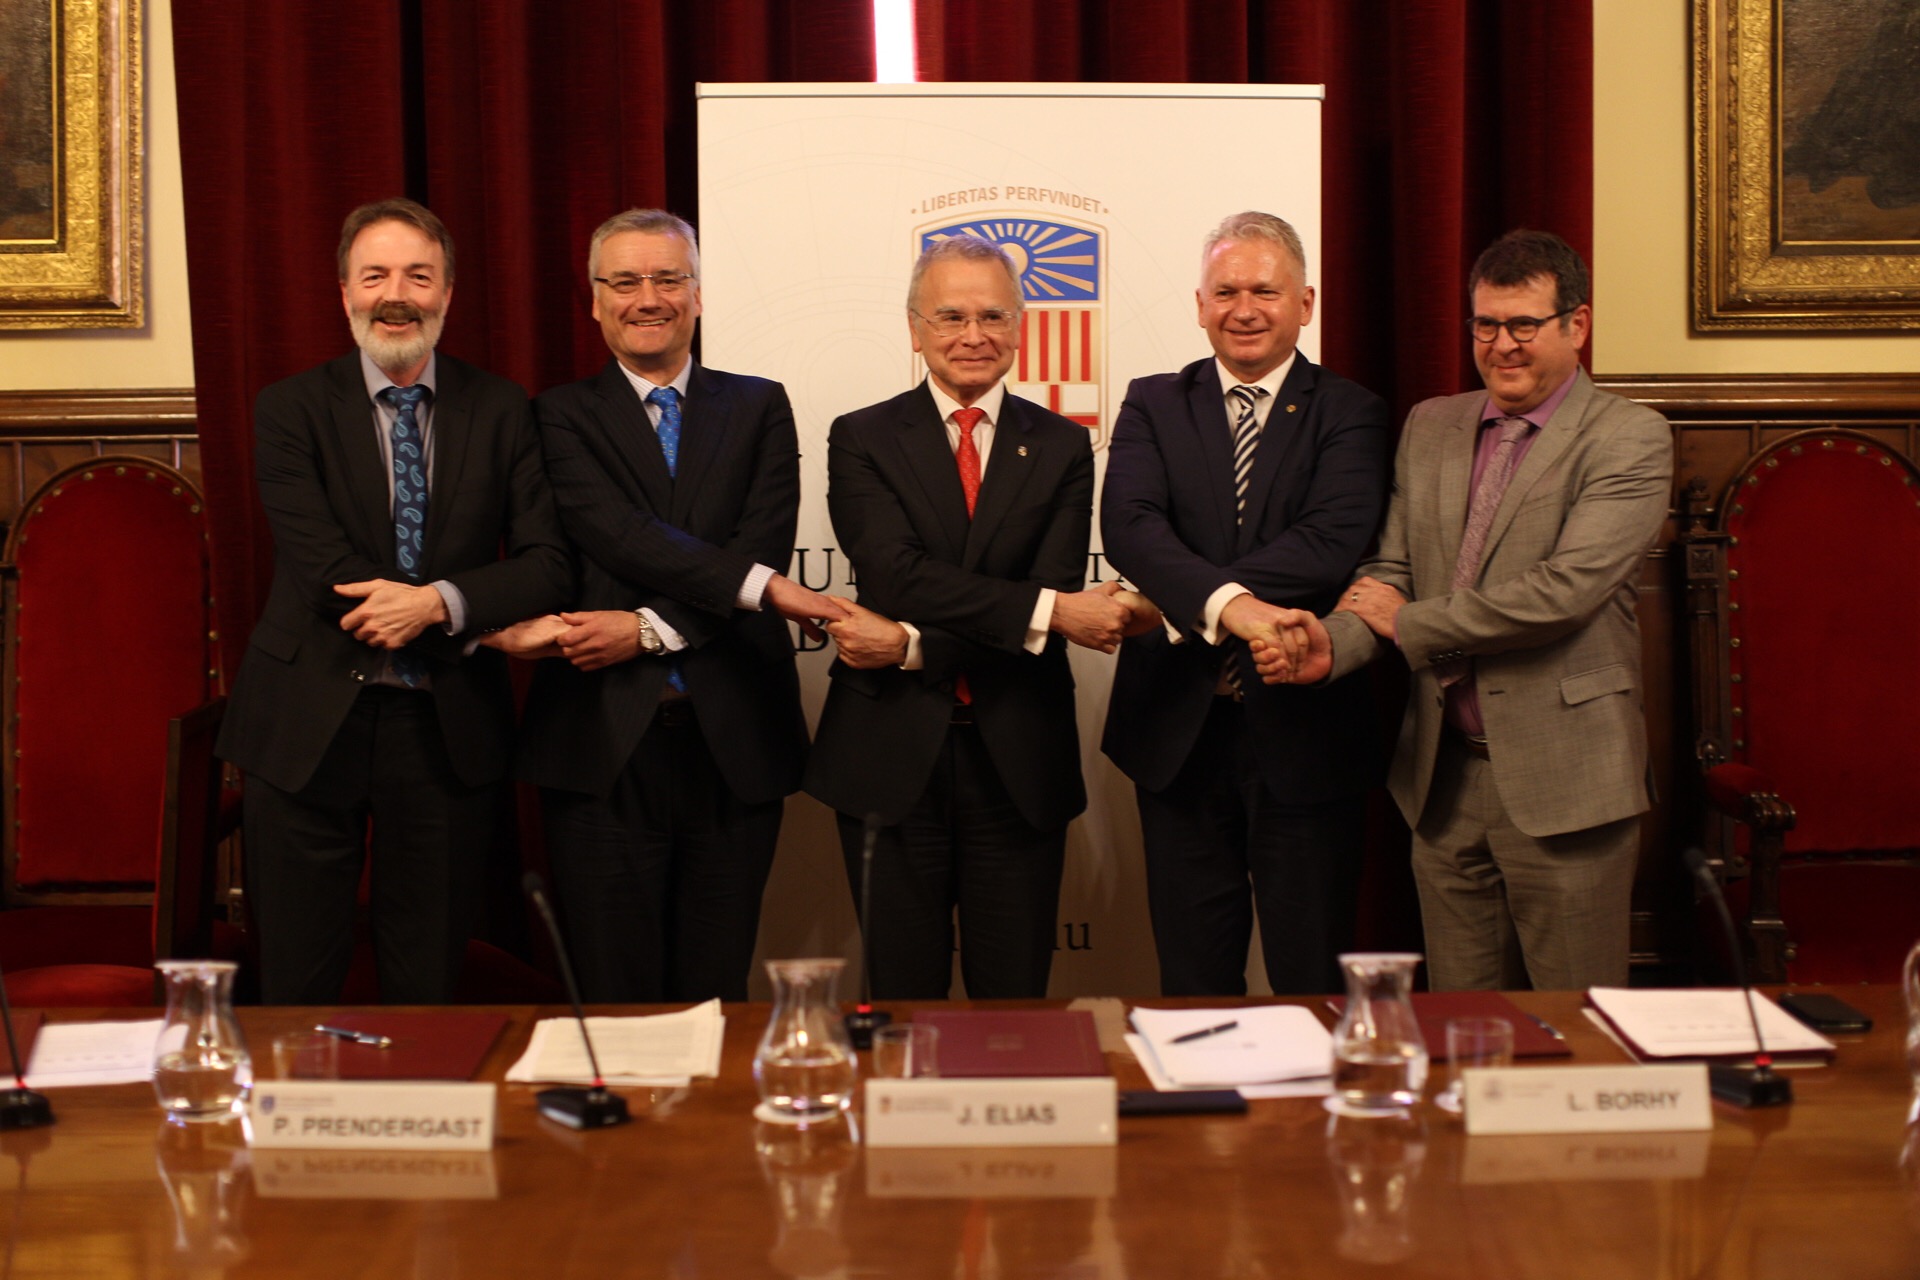 L'aliança CHARM-EU es va constituir a la Universitat de Barcelona el gener del 2019.